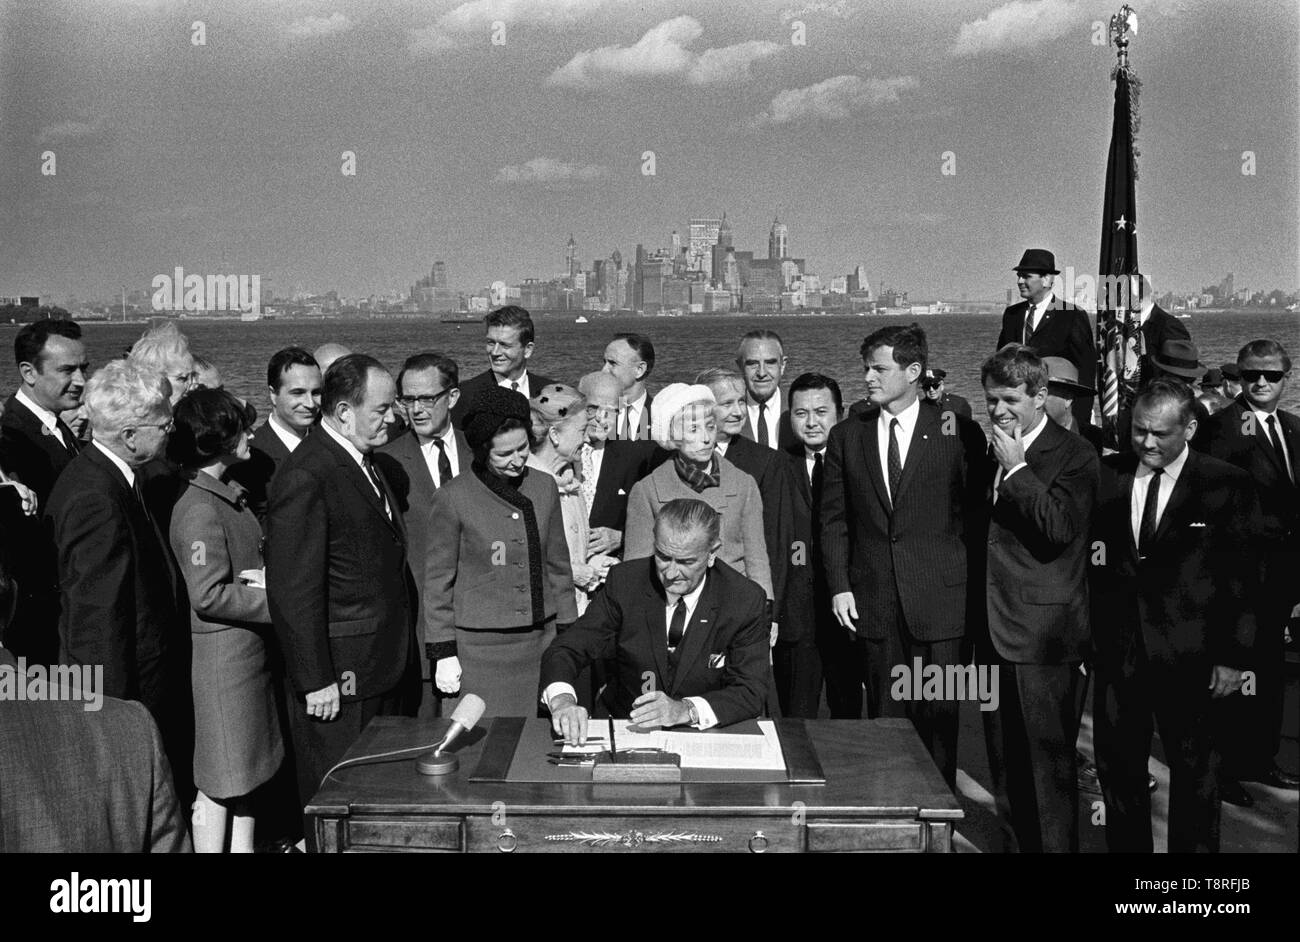 Le Président Lyndon B. Johnson signe la Loi sur l'immigration en tant que Vice-Président Hubert Humphrey, Lady Bird Johnson, Muriel Humphrey, le sénateur Edward (Ted) Kennedy, le Sénateur Robert F. Kennedy, et d'autres donnent sur. Liberty Island, New York, New York - 3 octobre 1965 Banque D'Images